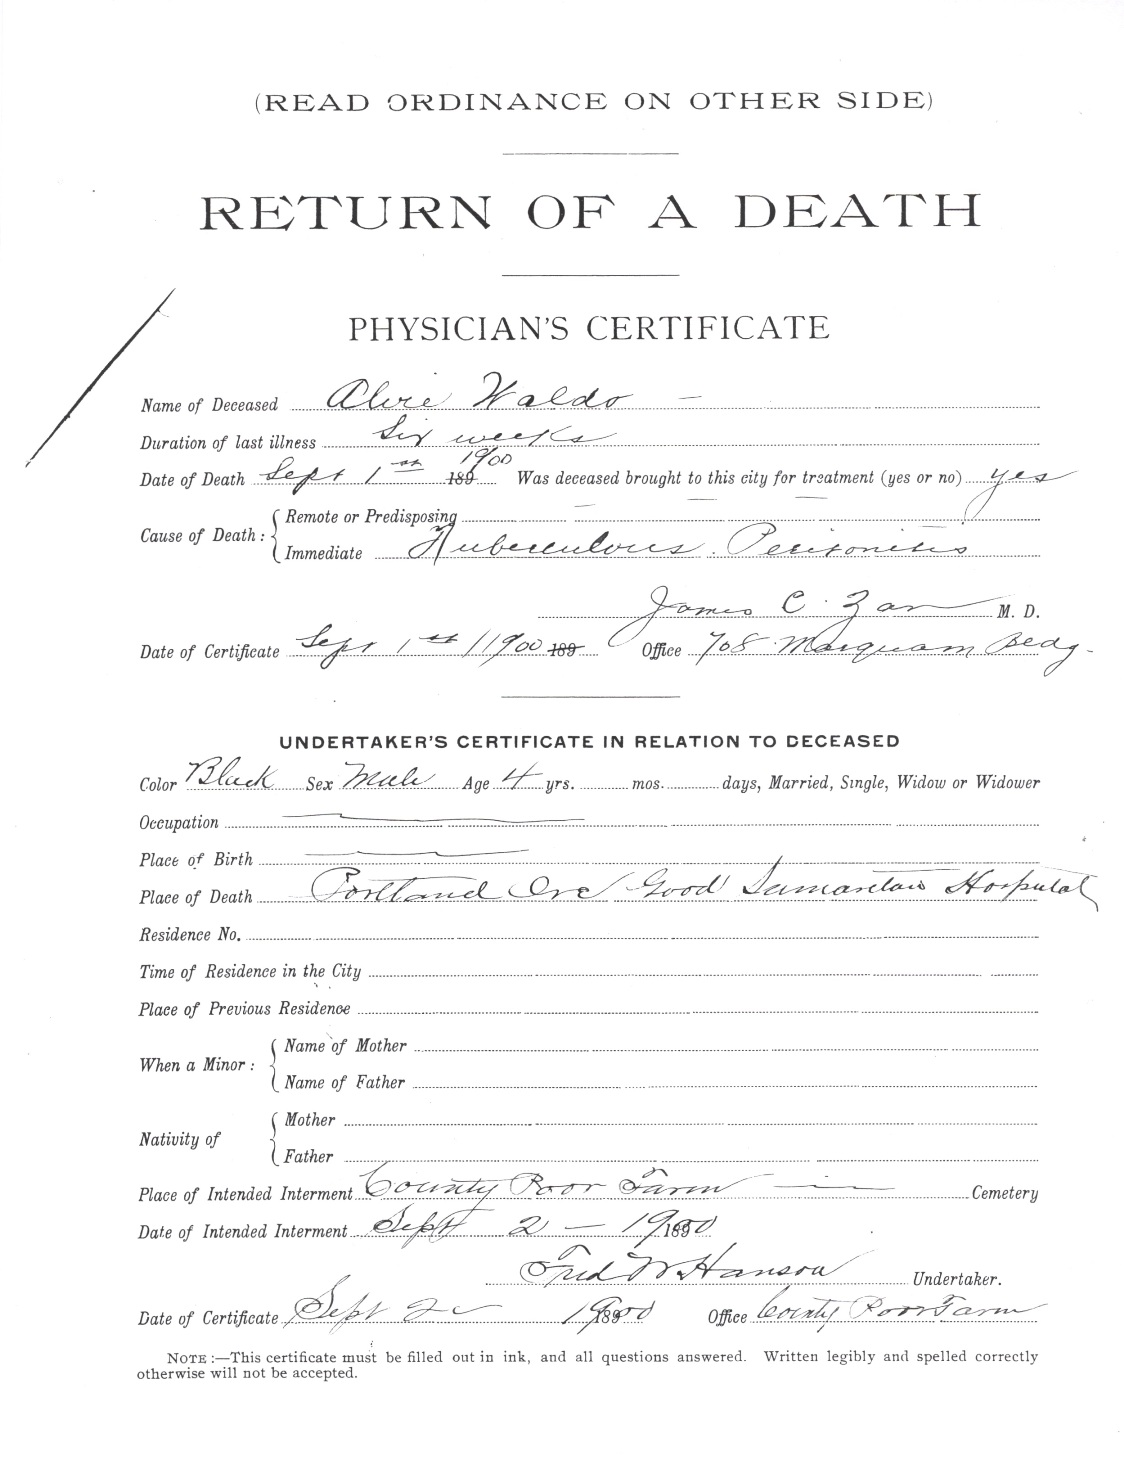 Alvia Waldo Death Certificate